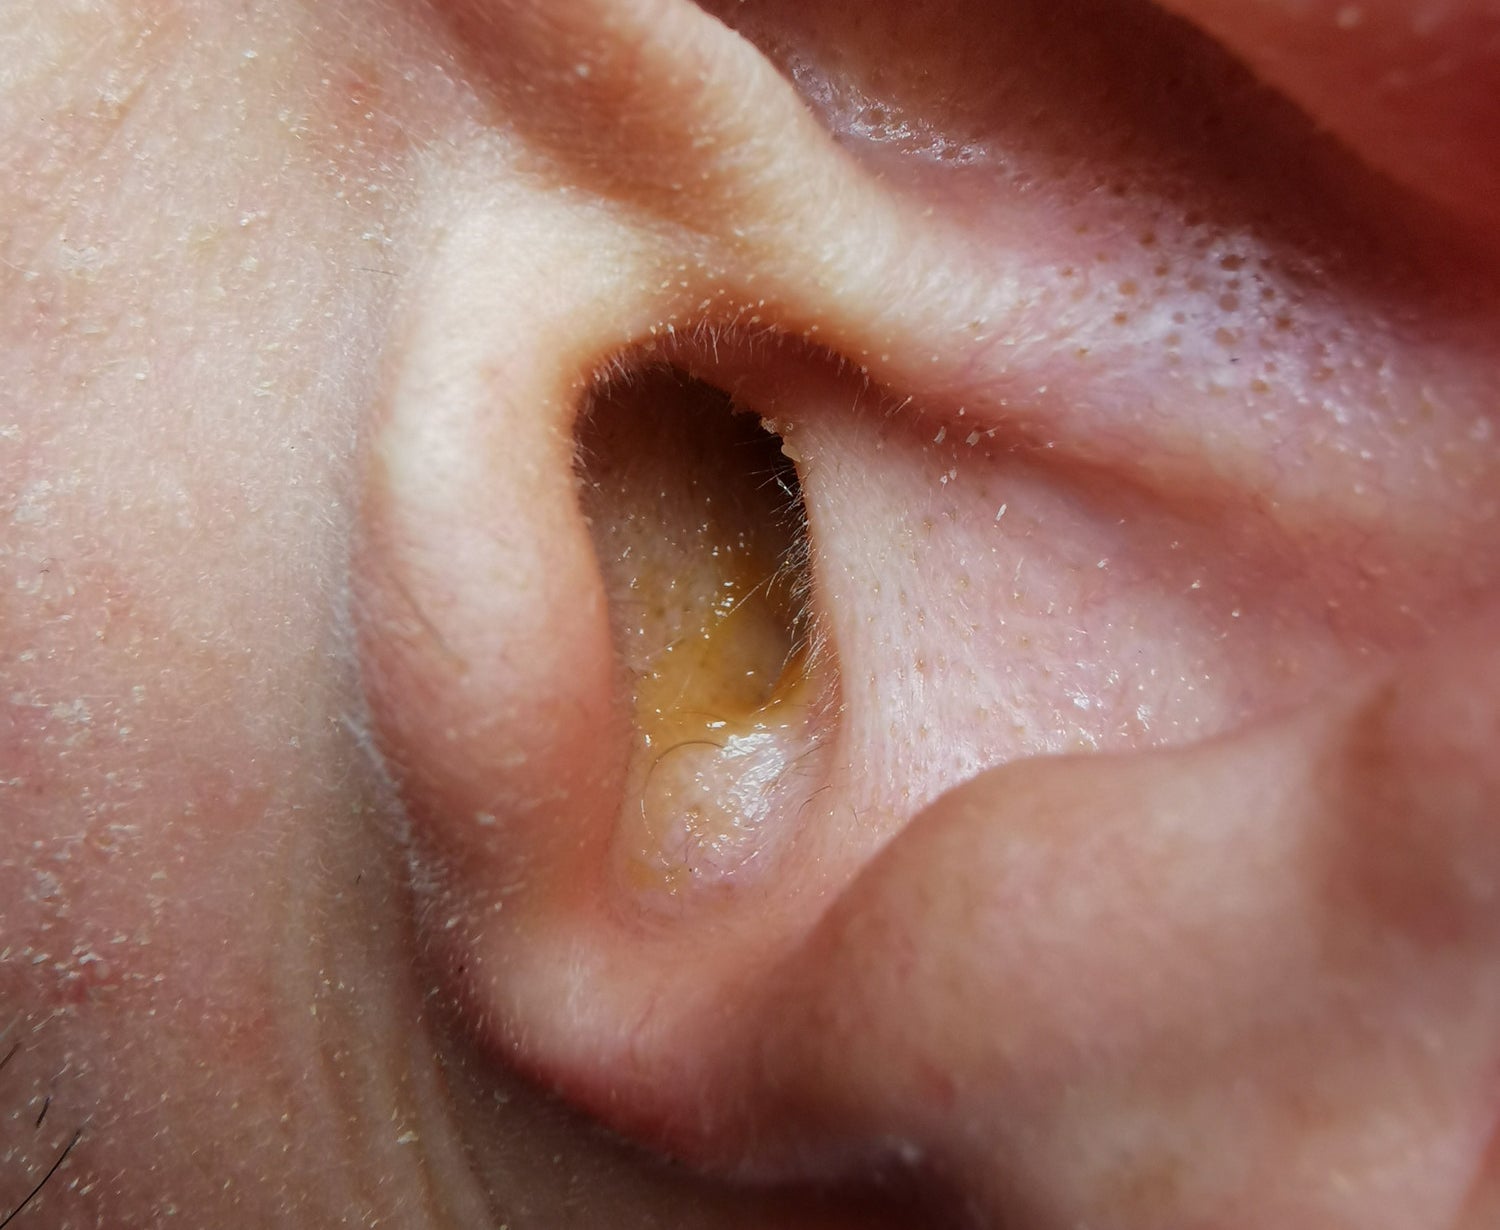 Ear wax in someone&#x27;s ear